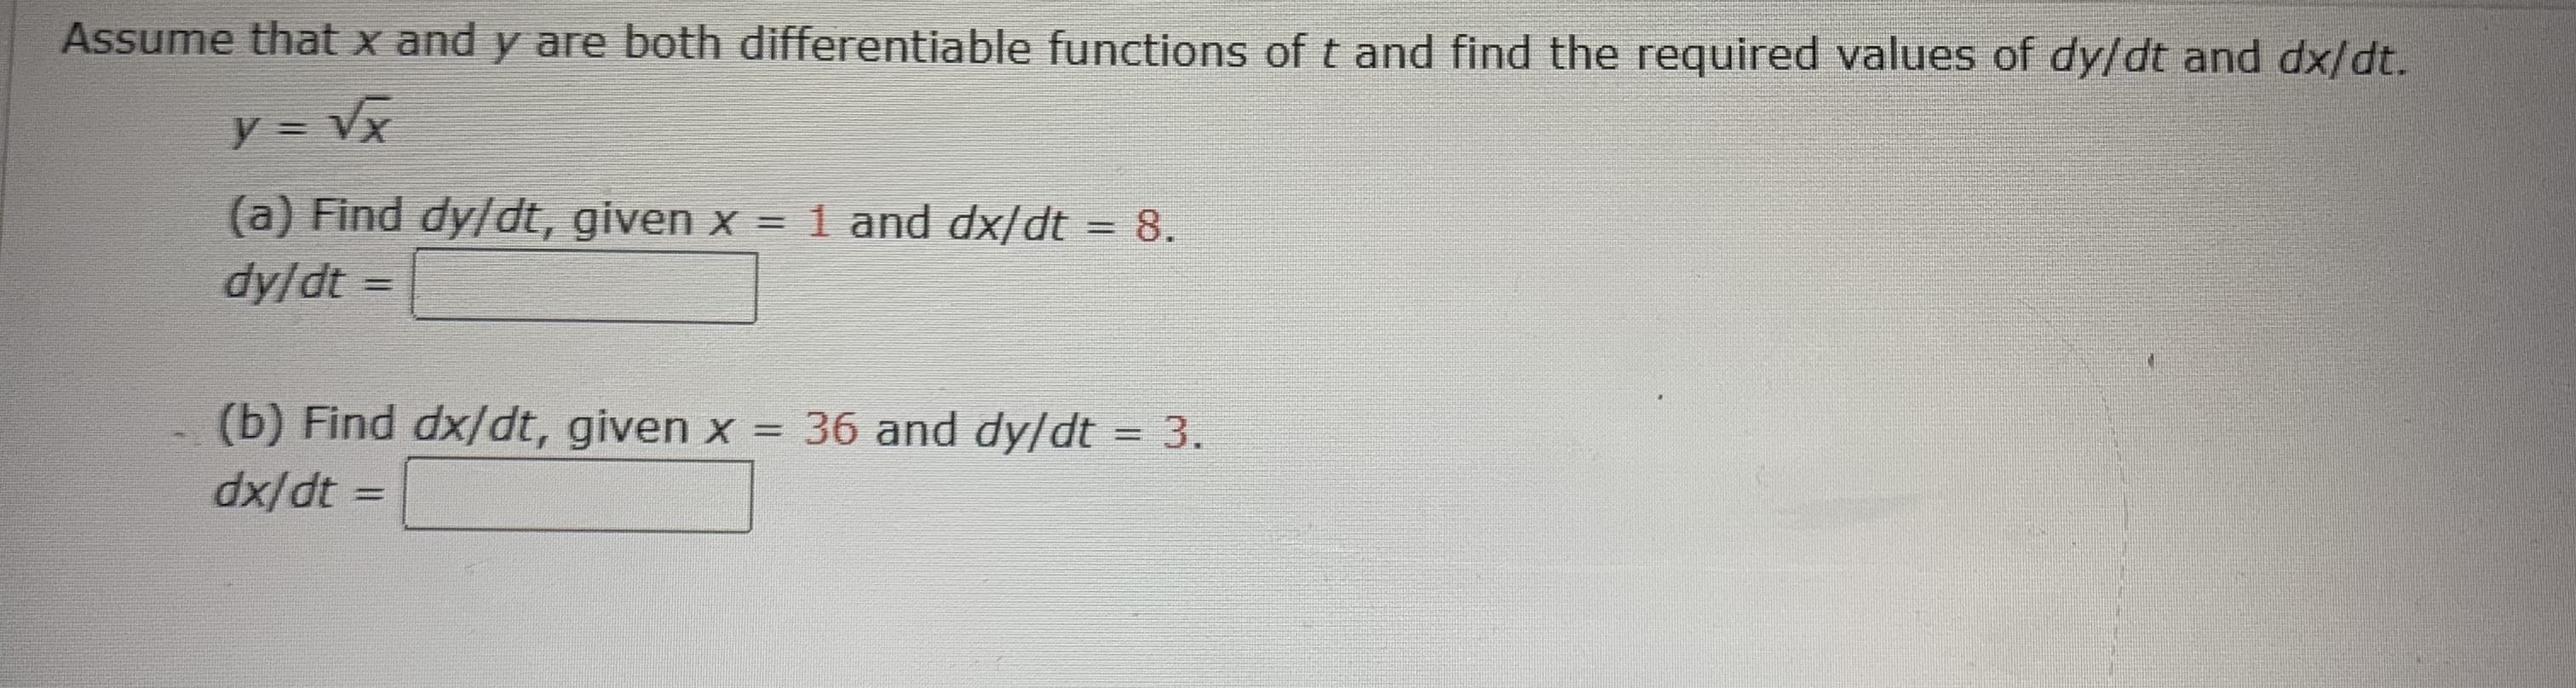 (a) Find dy/dt, given x = 1 and dx/dt = 8.
dy/dt =
(b) Find dx/dt, given x = 36 and dy/dt = 3.
dx/dt =
